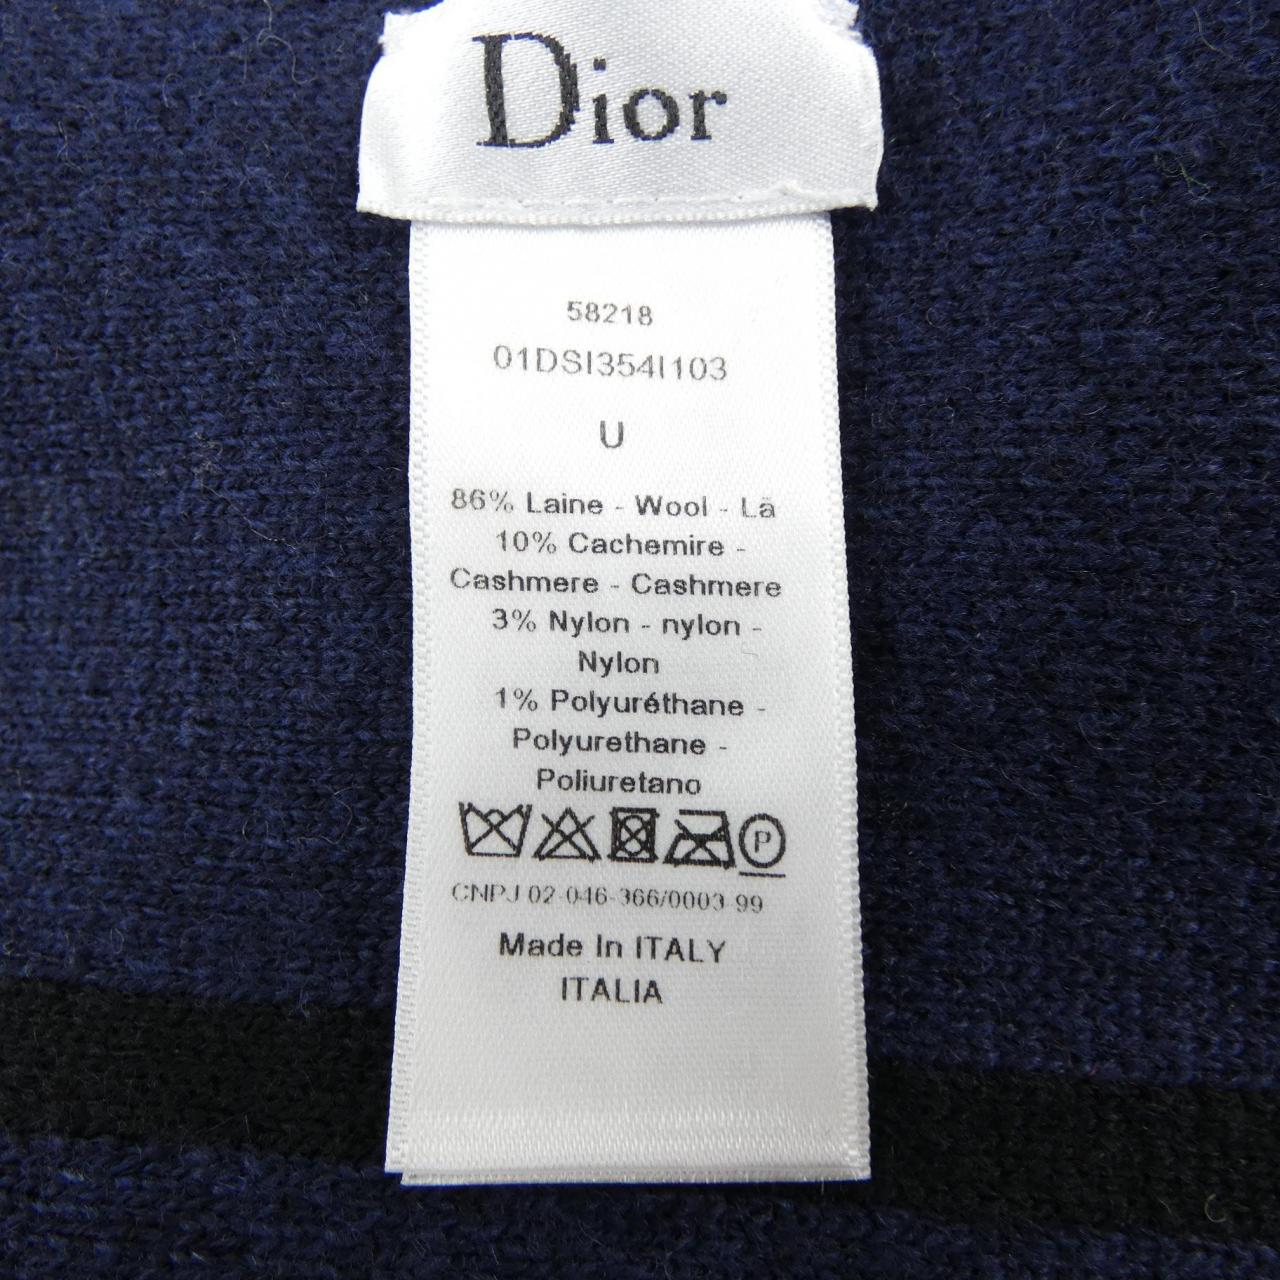 克里斯汀·迪奥 (Christian DIOR克里斯汀·迪奥 (Christian Dior) 围巾